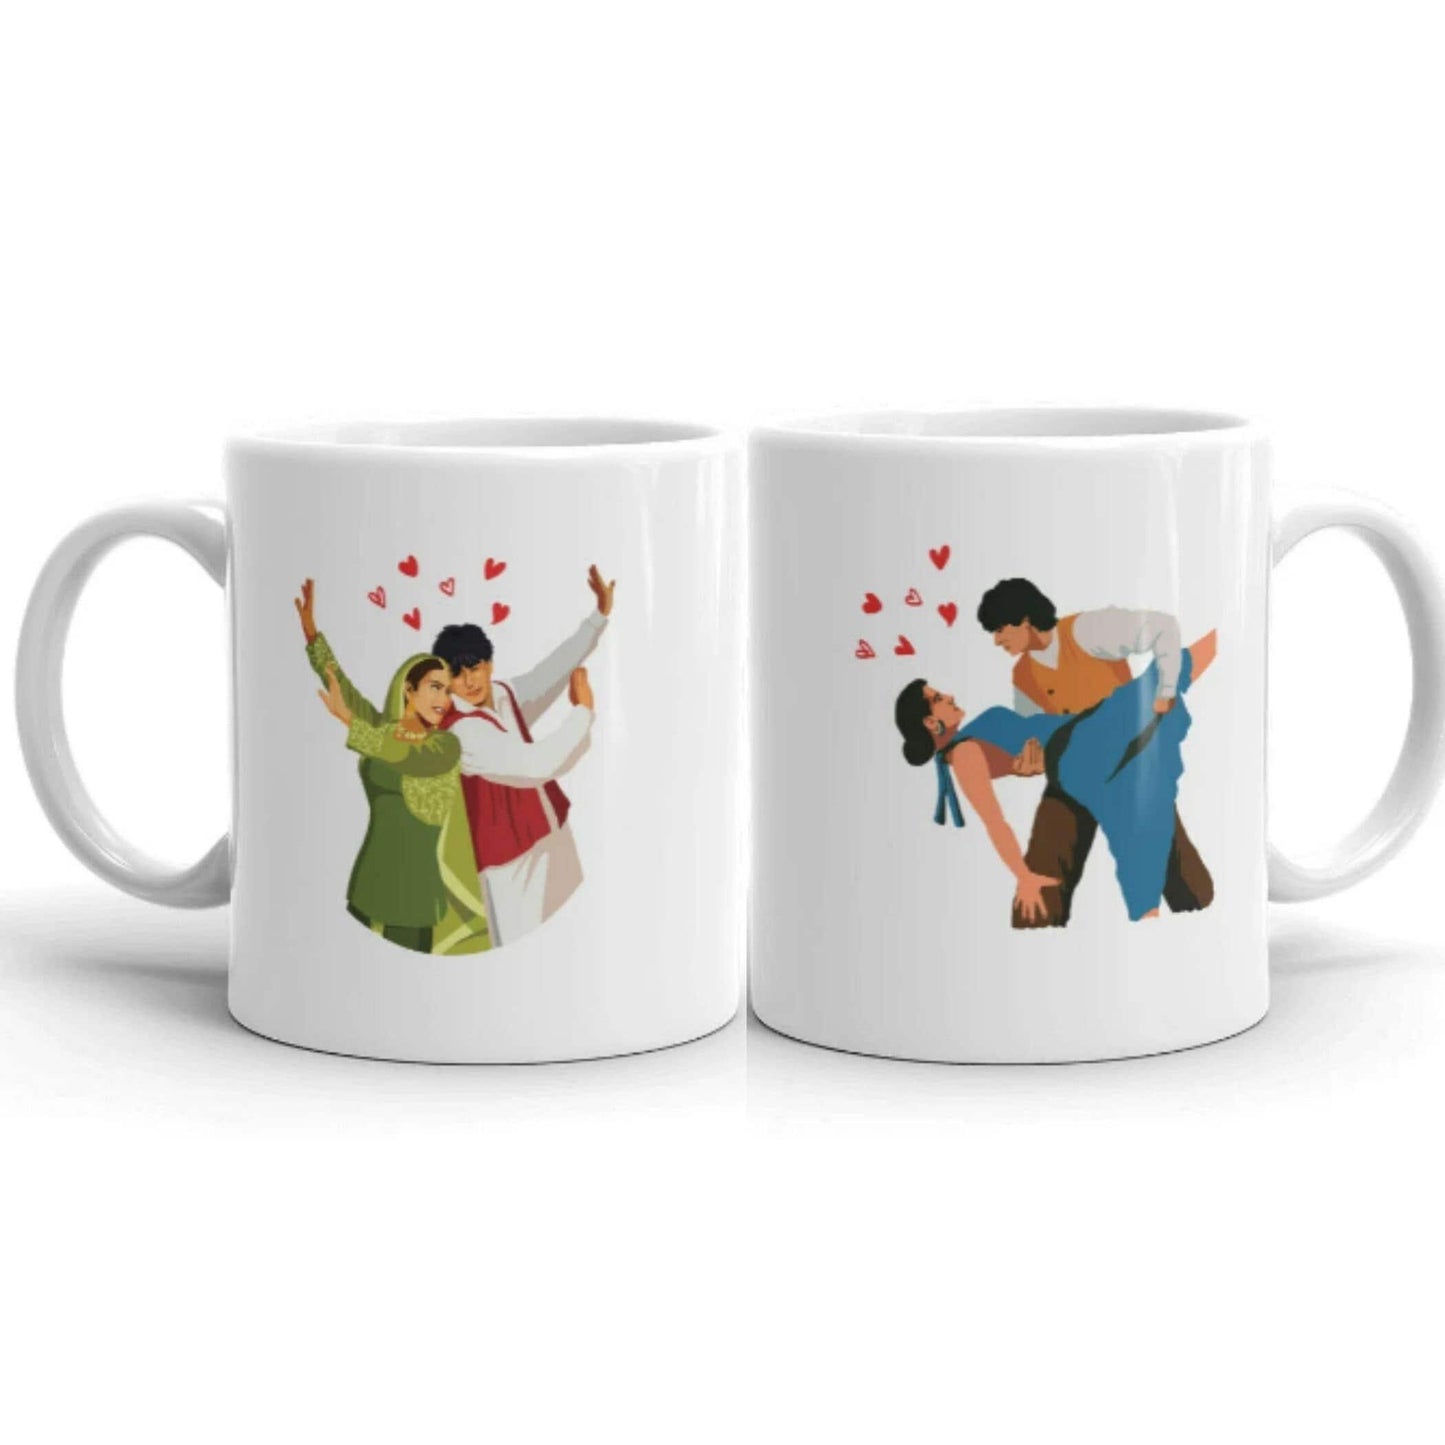 Mug | DDLJ Bollywood - Artkins Lifestyle